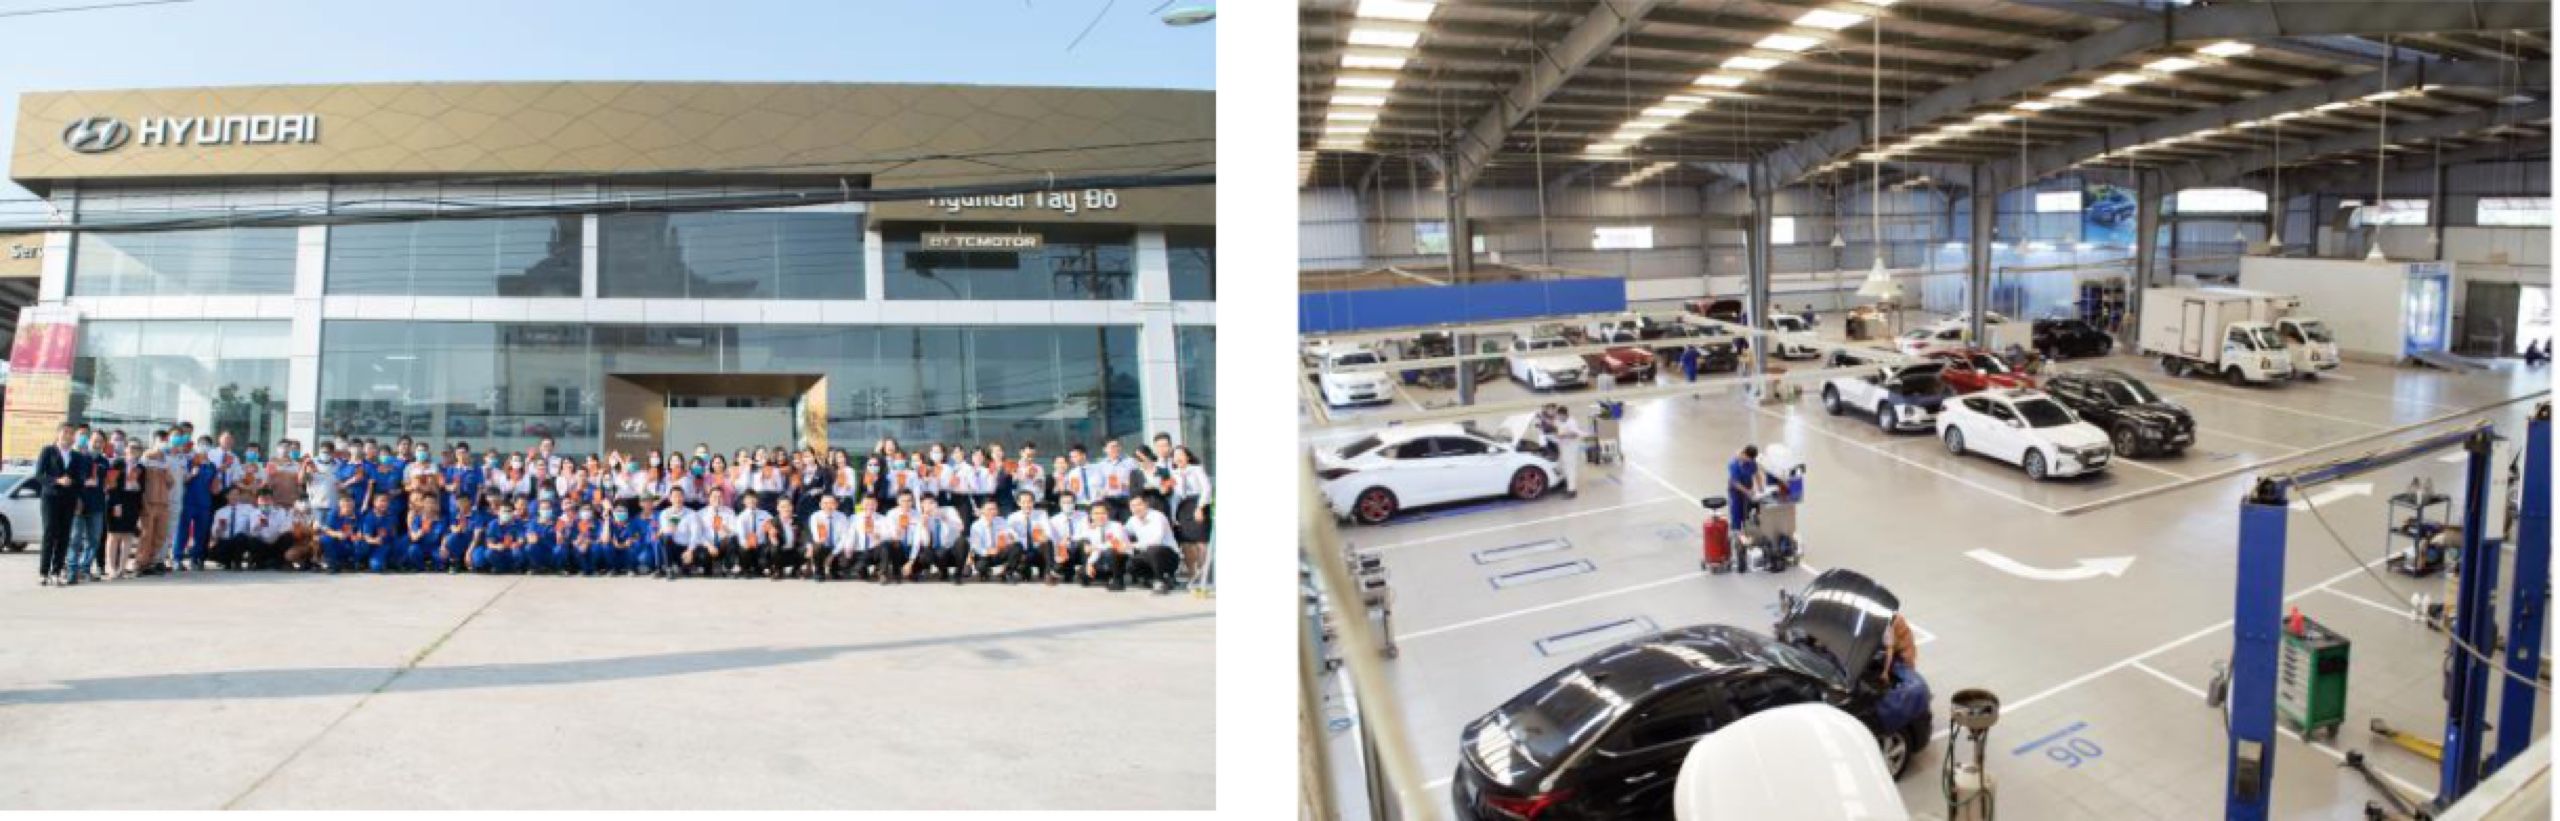 Hyundai Tây Đô: Nhiều khuyến mãi dịch vụ, ưu đãi mùa dịch